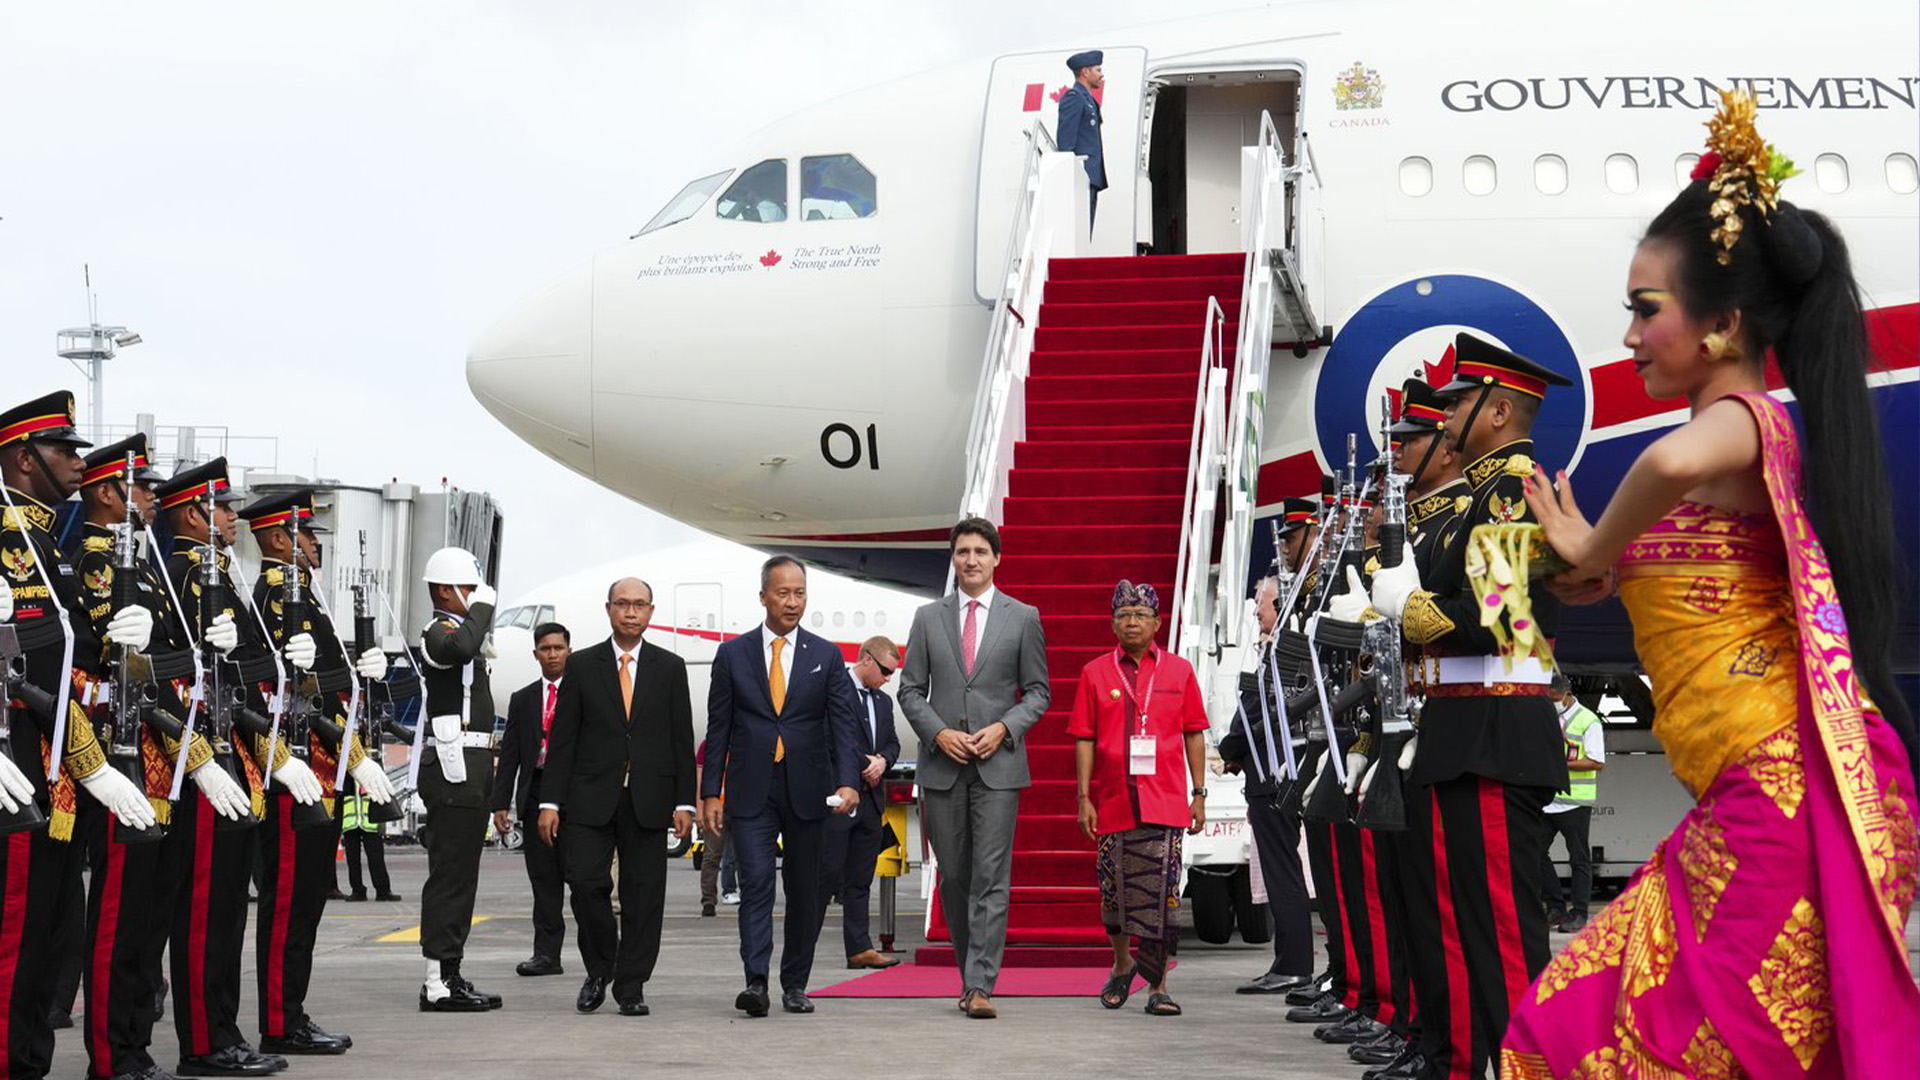 Le premier ministre Justin Trudeau arrive à Bali, en Indonésie, pour participer au G20 le lundi 14 novembre 2022.